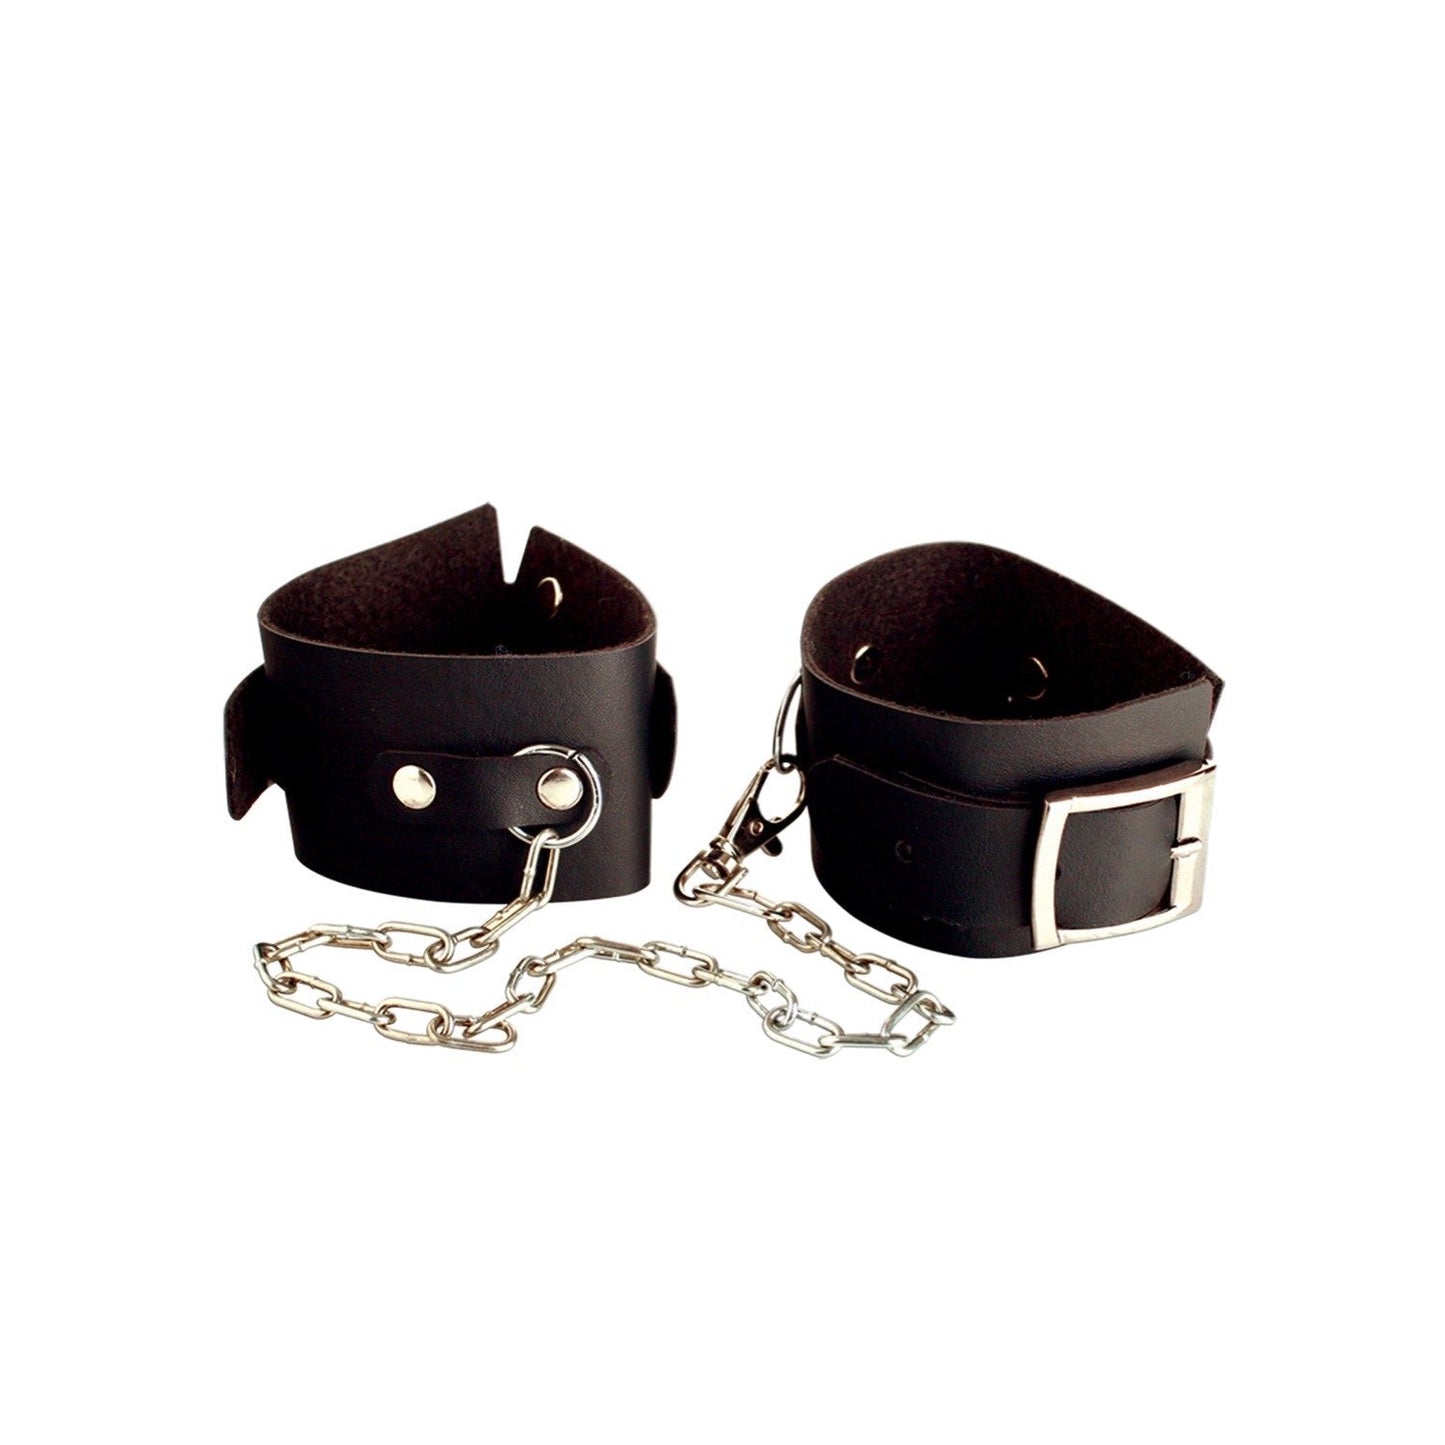 Beginner's Cuffs - Black Leather Cuffs